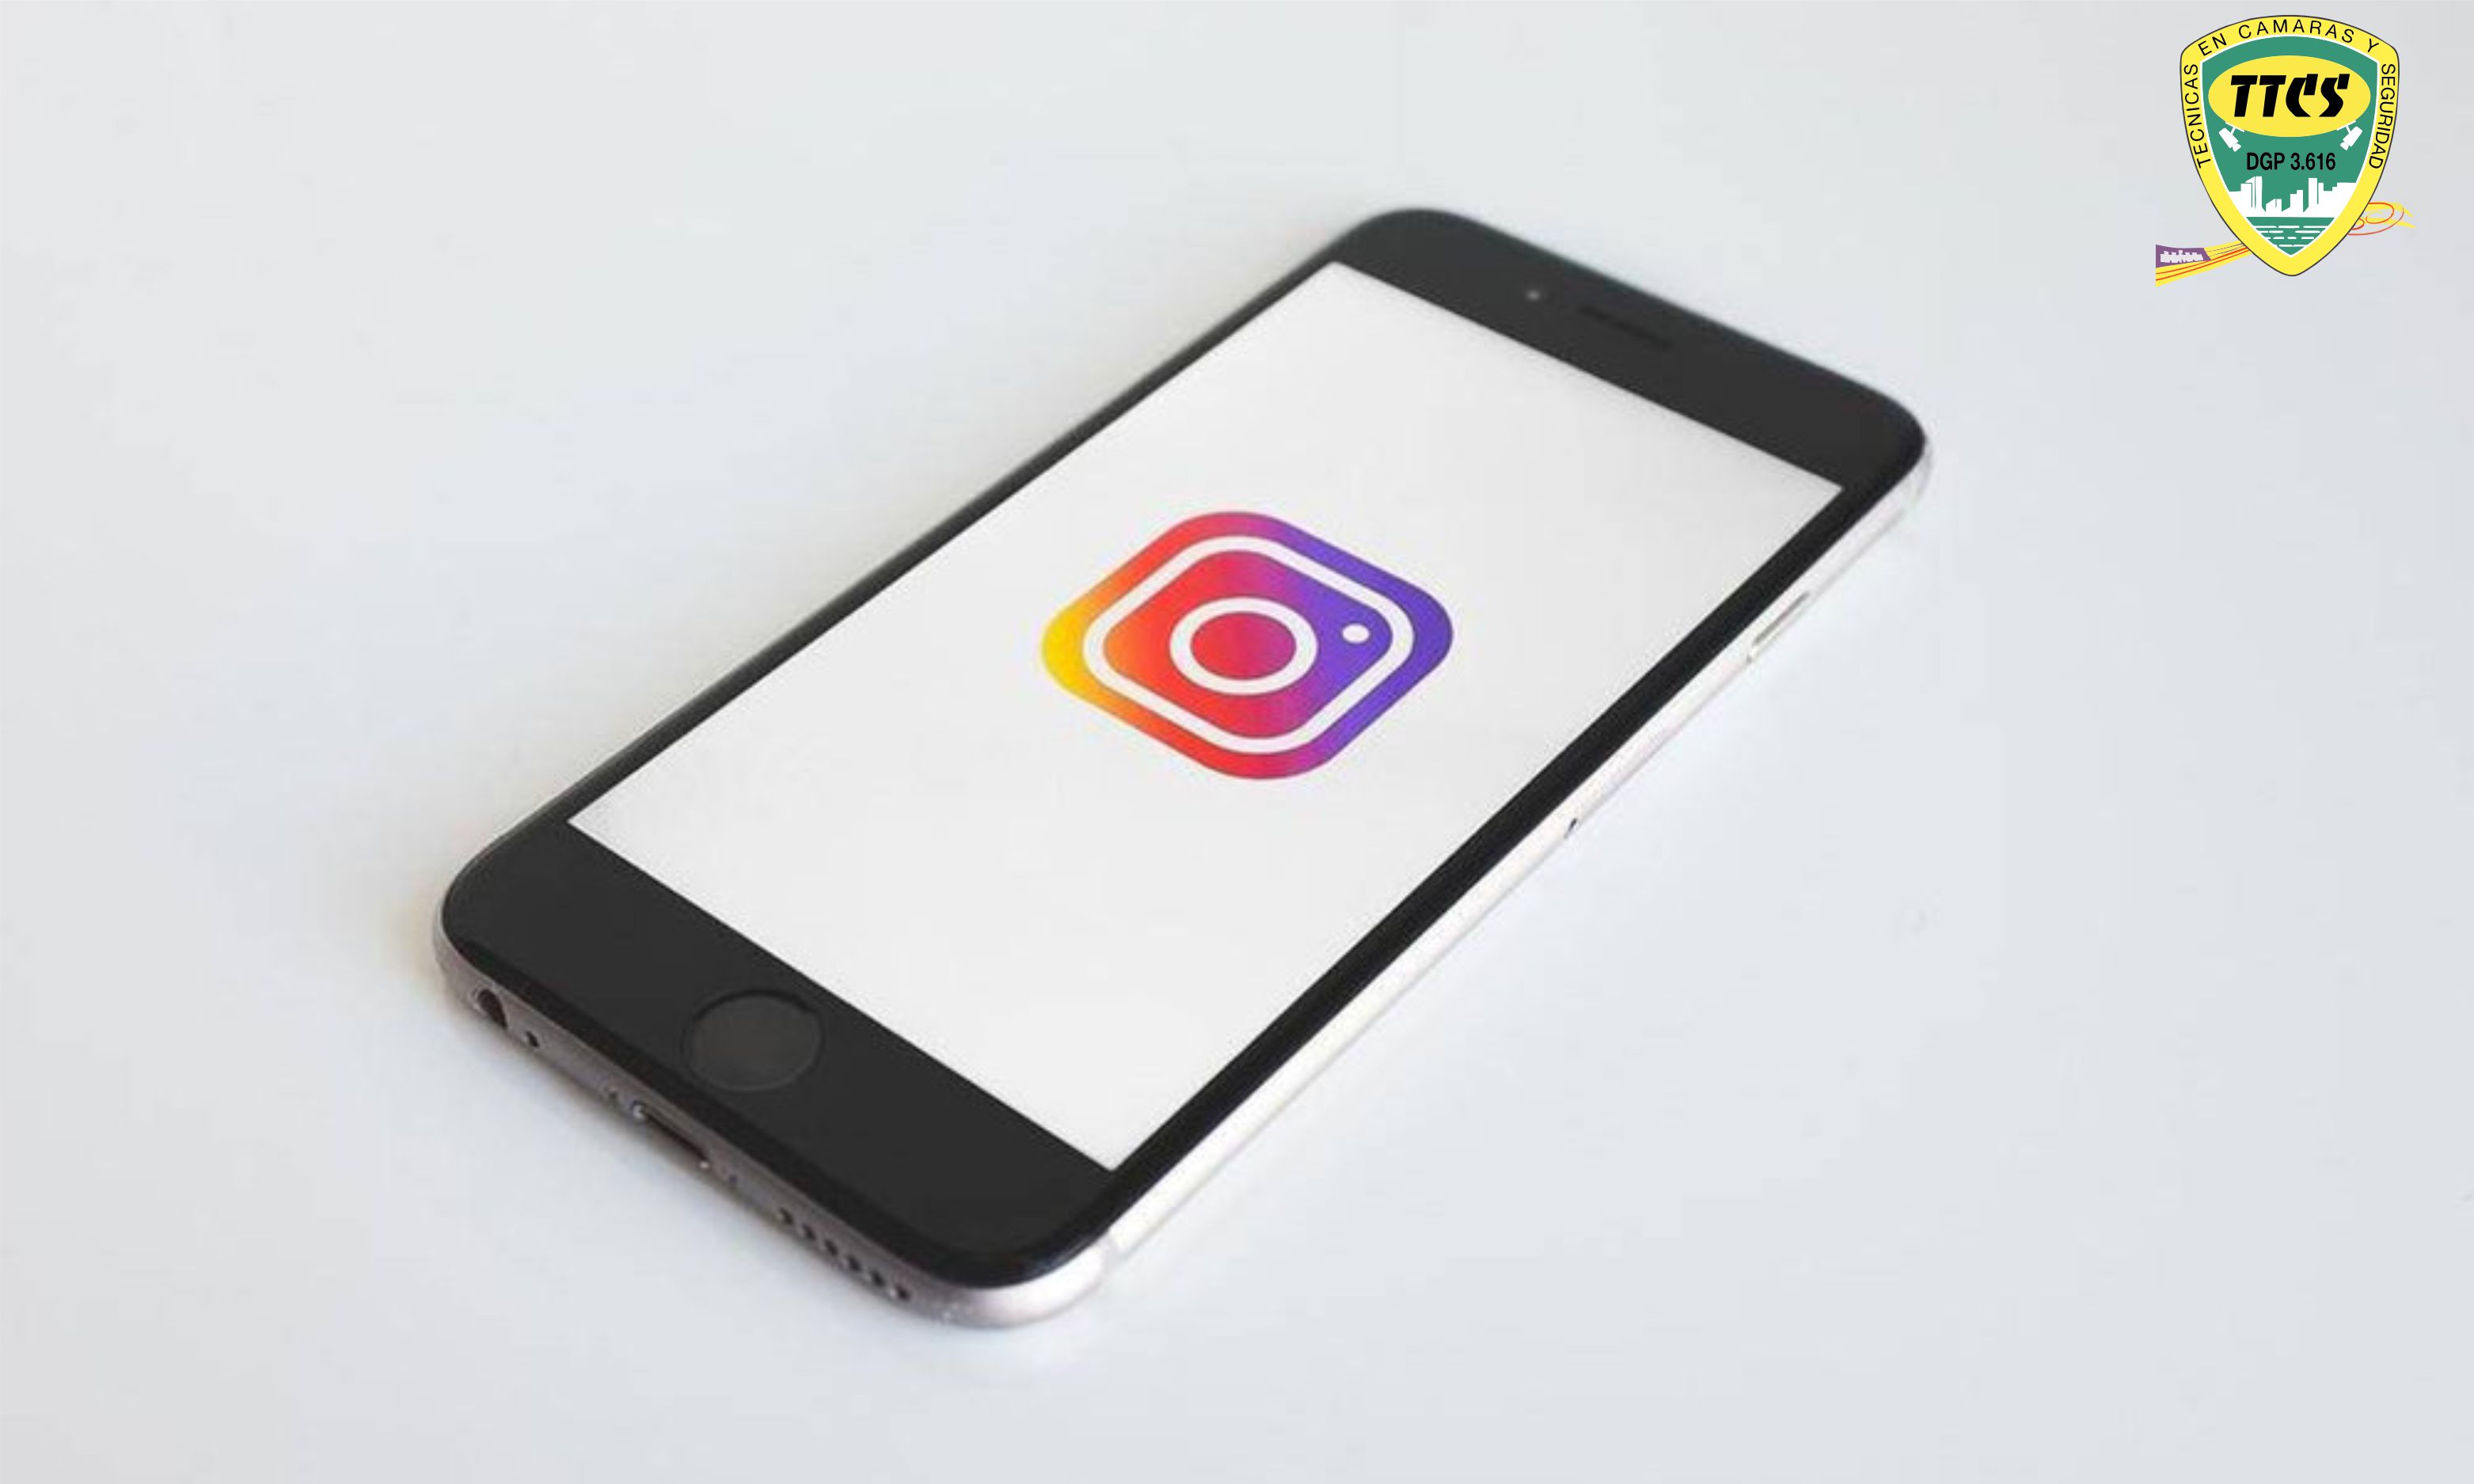 TTCS - Influencers Instagram robo datos